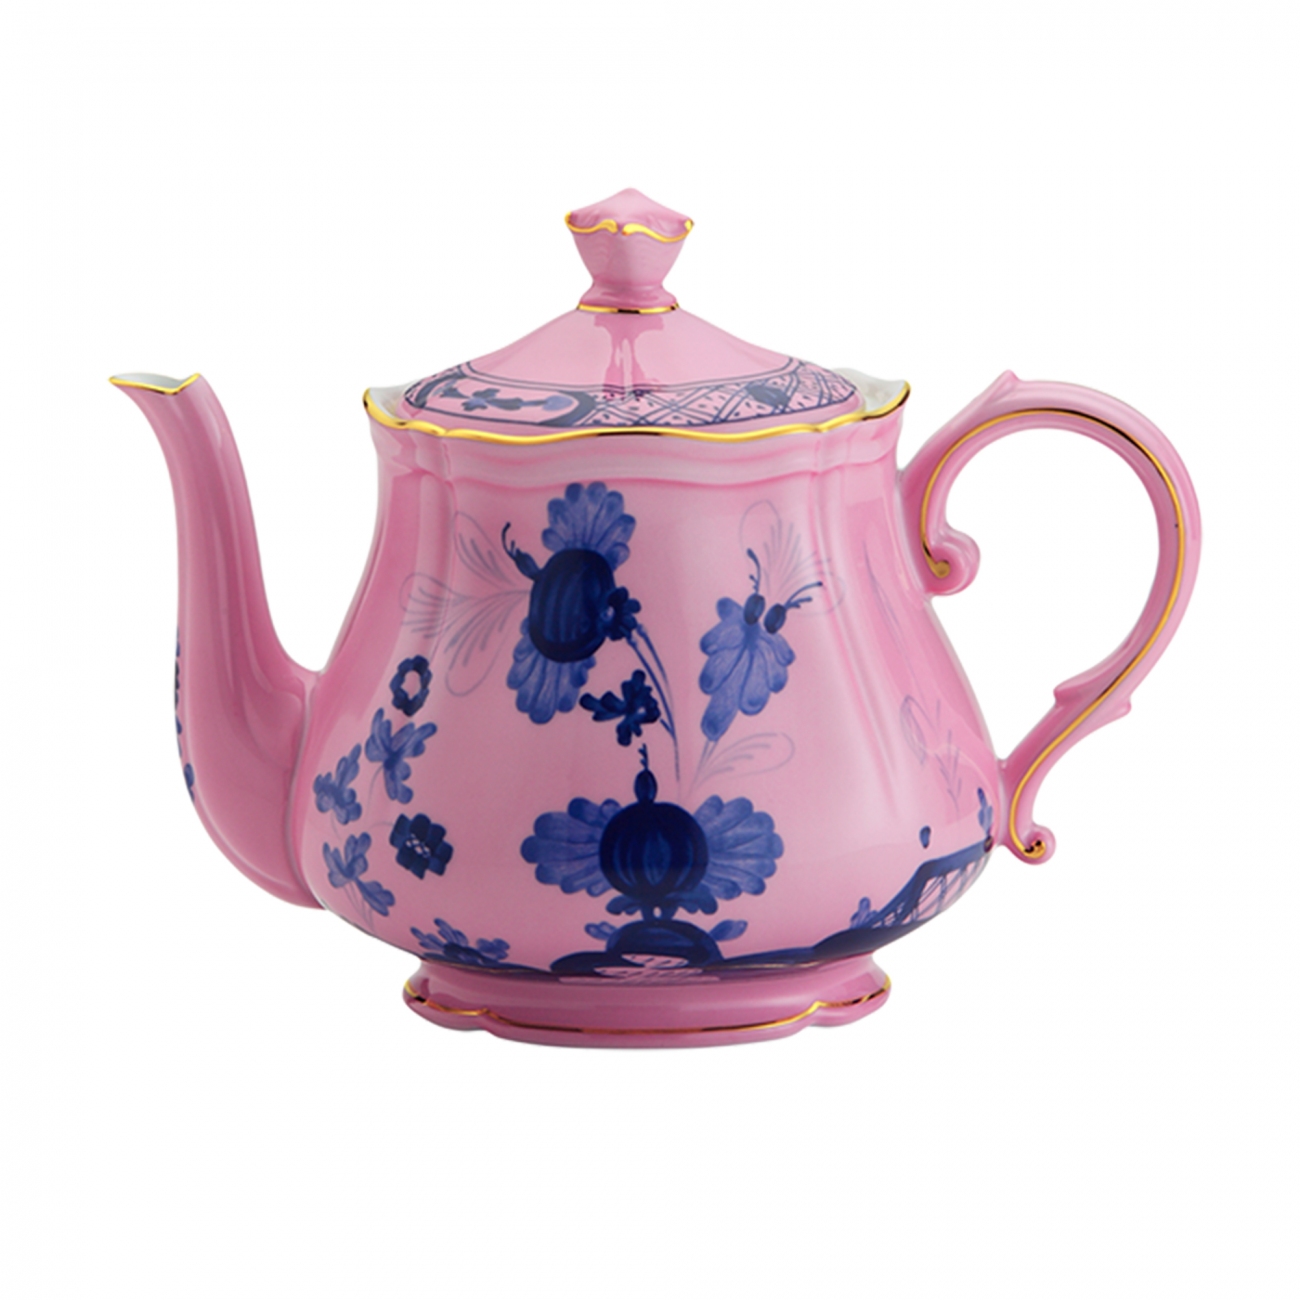 Ginori 1735 Oriente Italiano Teapot